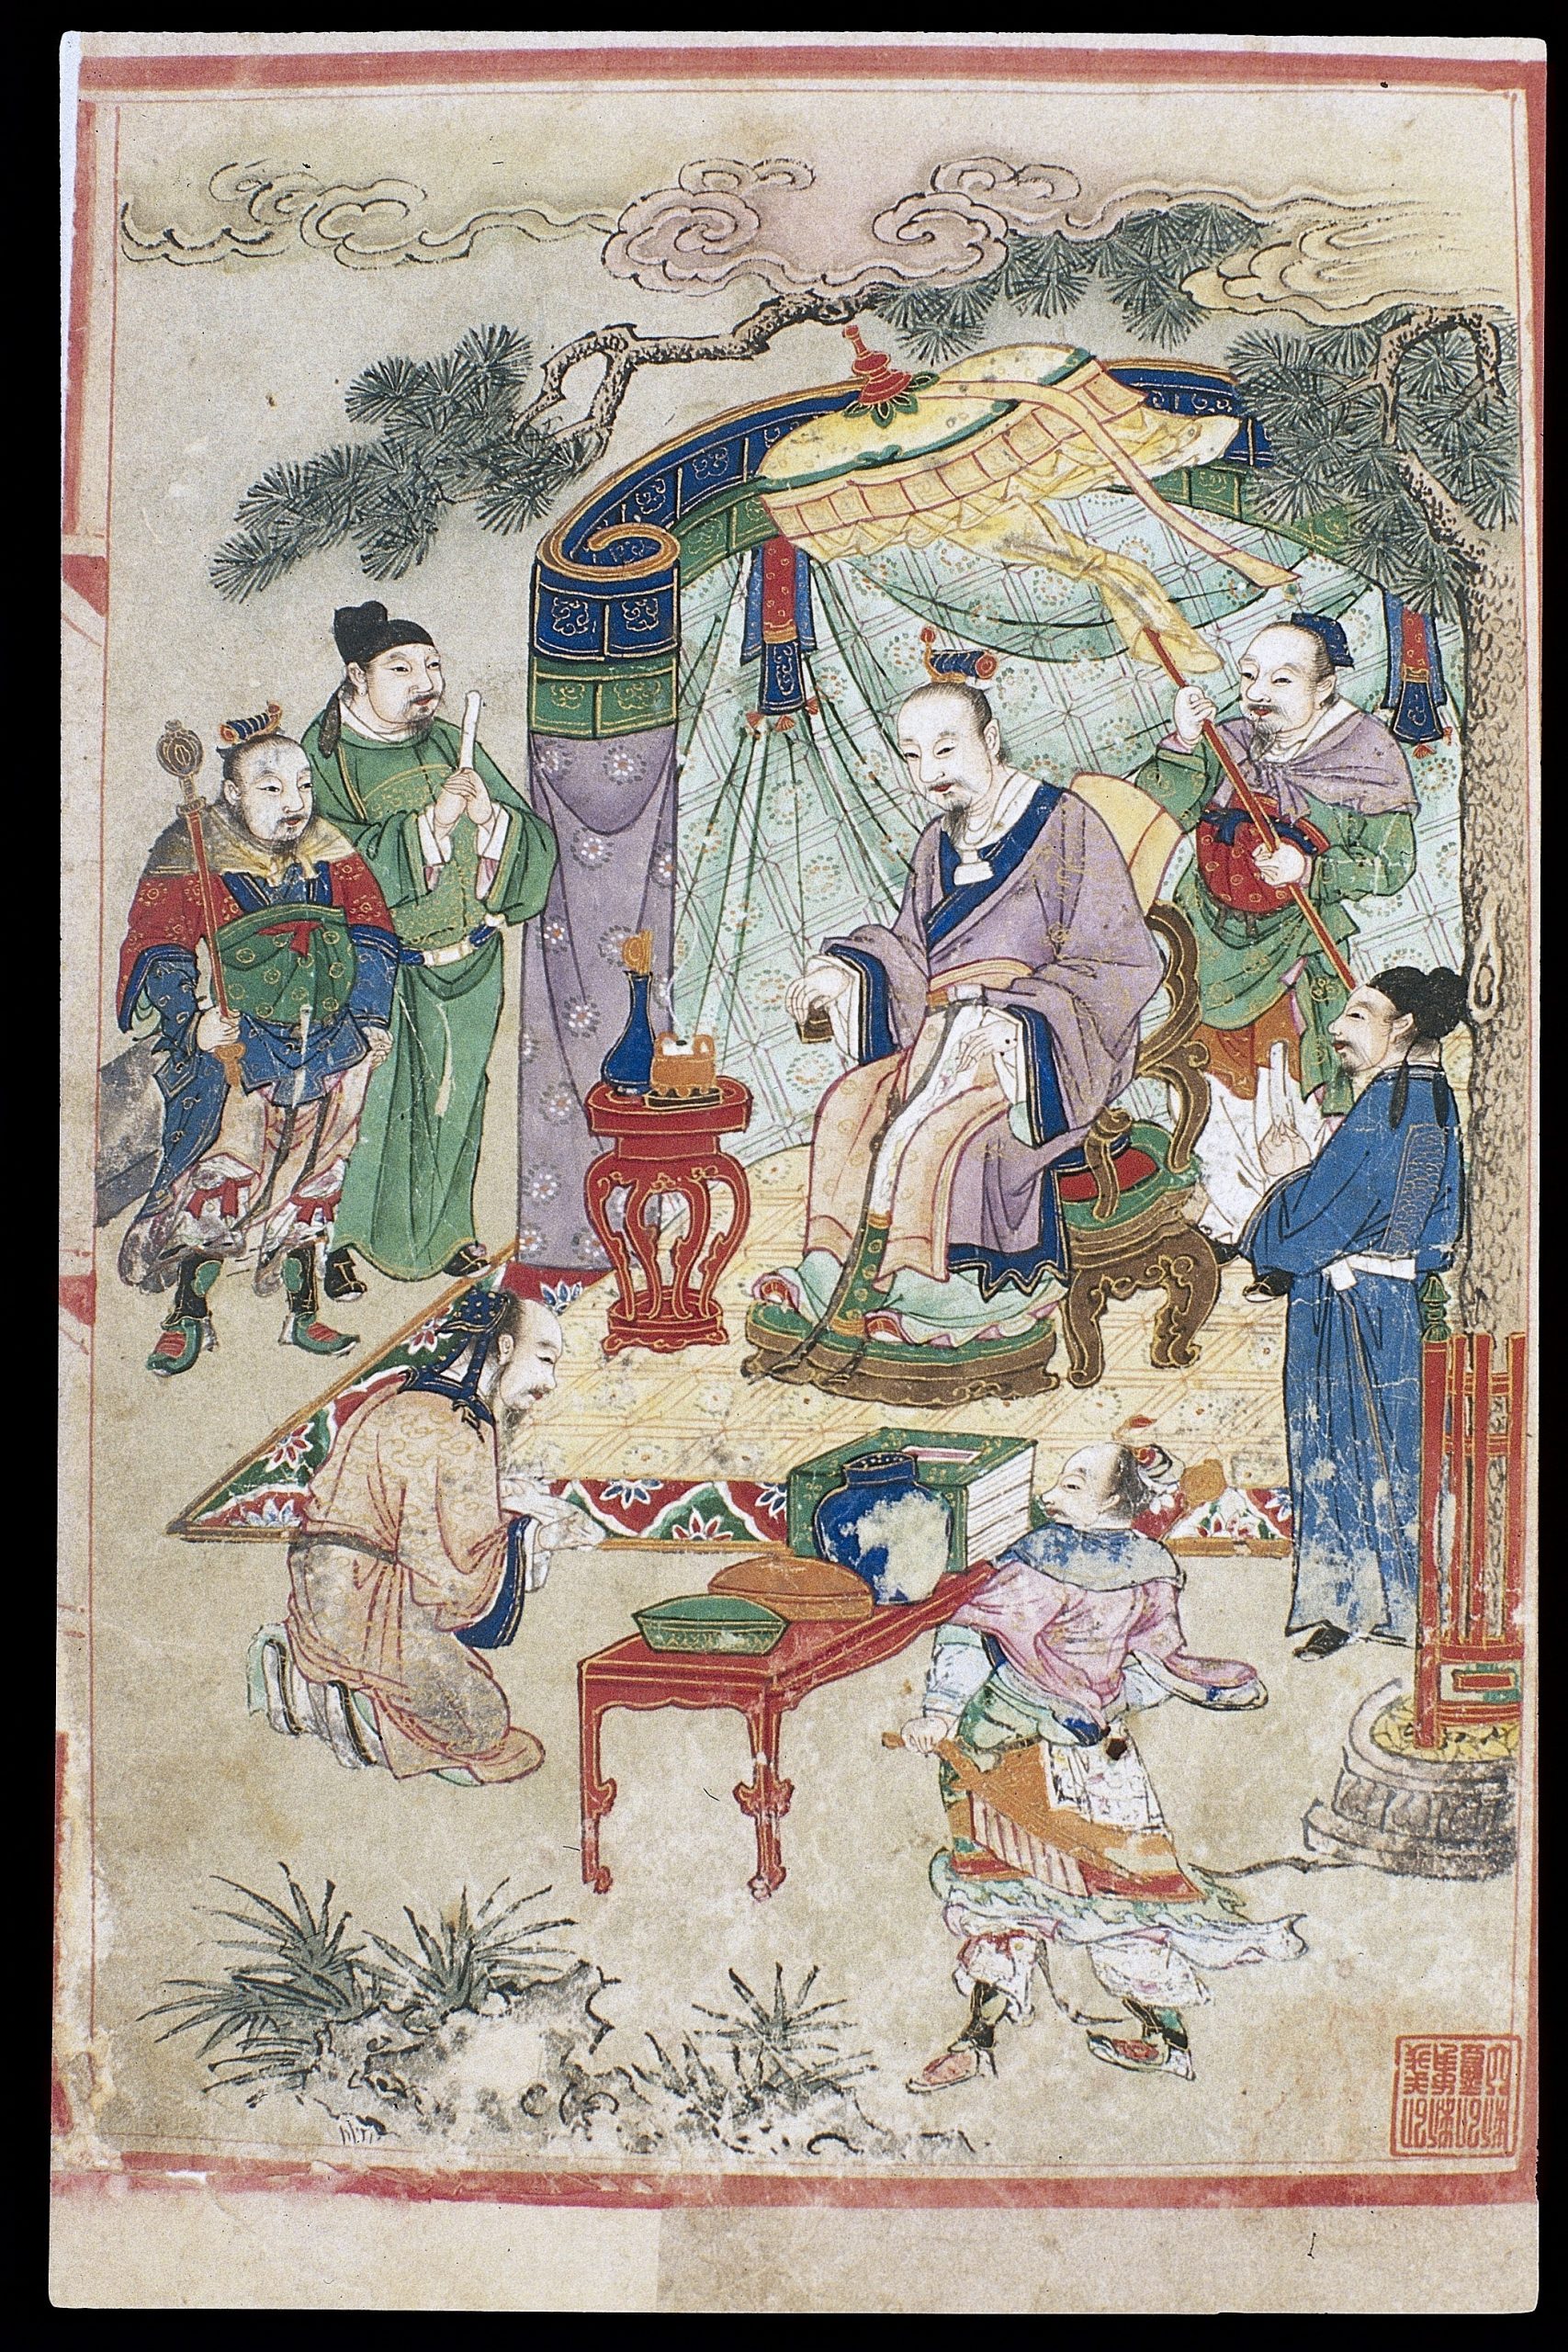 Pintura colorida de Huangdi, conhecido como o Imperador Amarelo, na China Antiga. Ele está sentado em uma cadeira e há alguns homens ao seu redor.